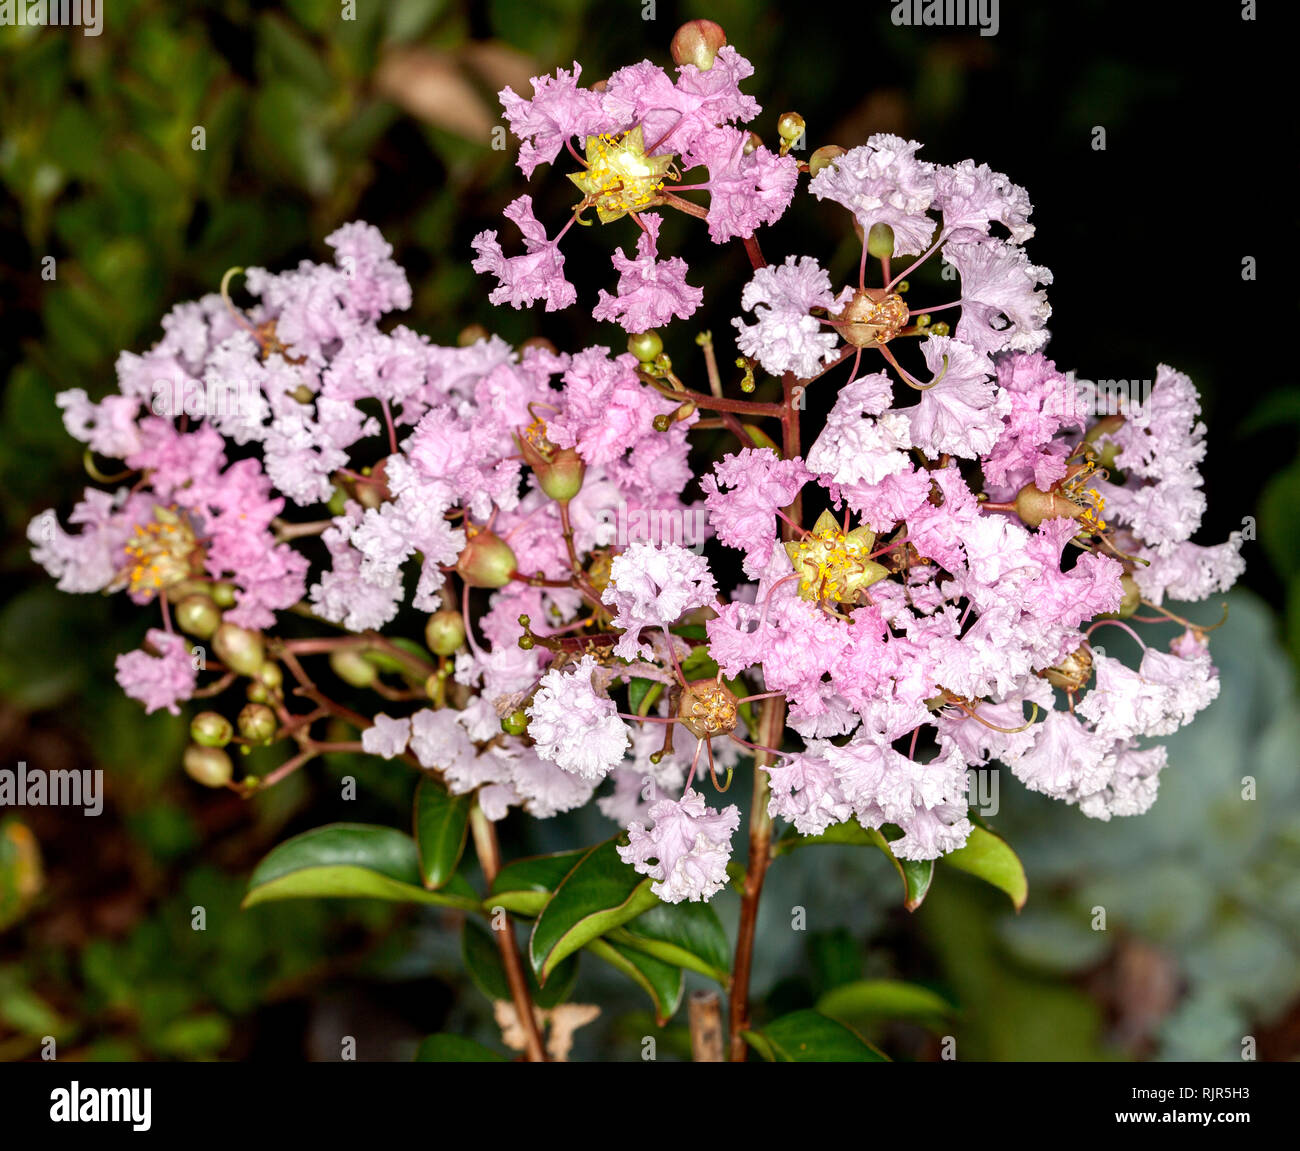 Cluster von zarten blassrosa Blüten der sommergrüne Strauch/Baum Crepe Myrtle, Lagerstroemia indica ordette' gegen den Hintergrund der grünen Laub Stockfoto